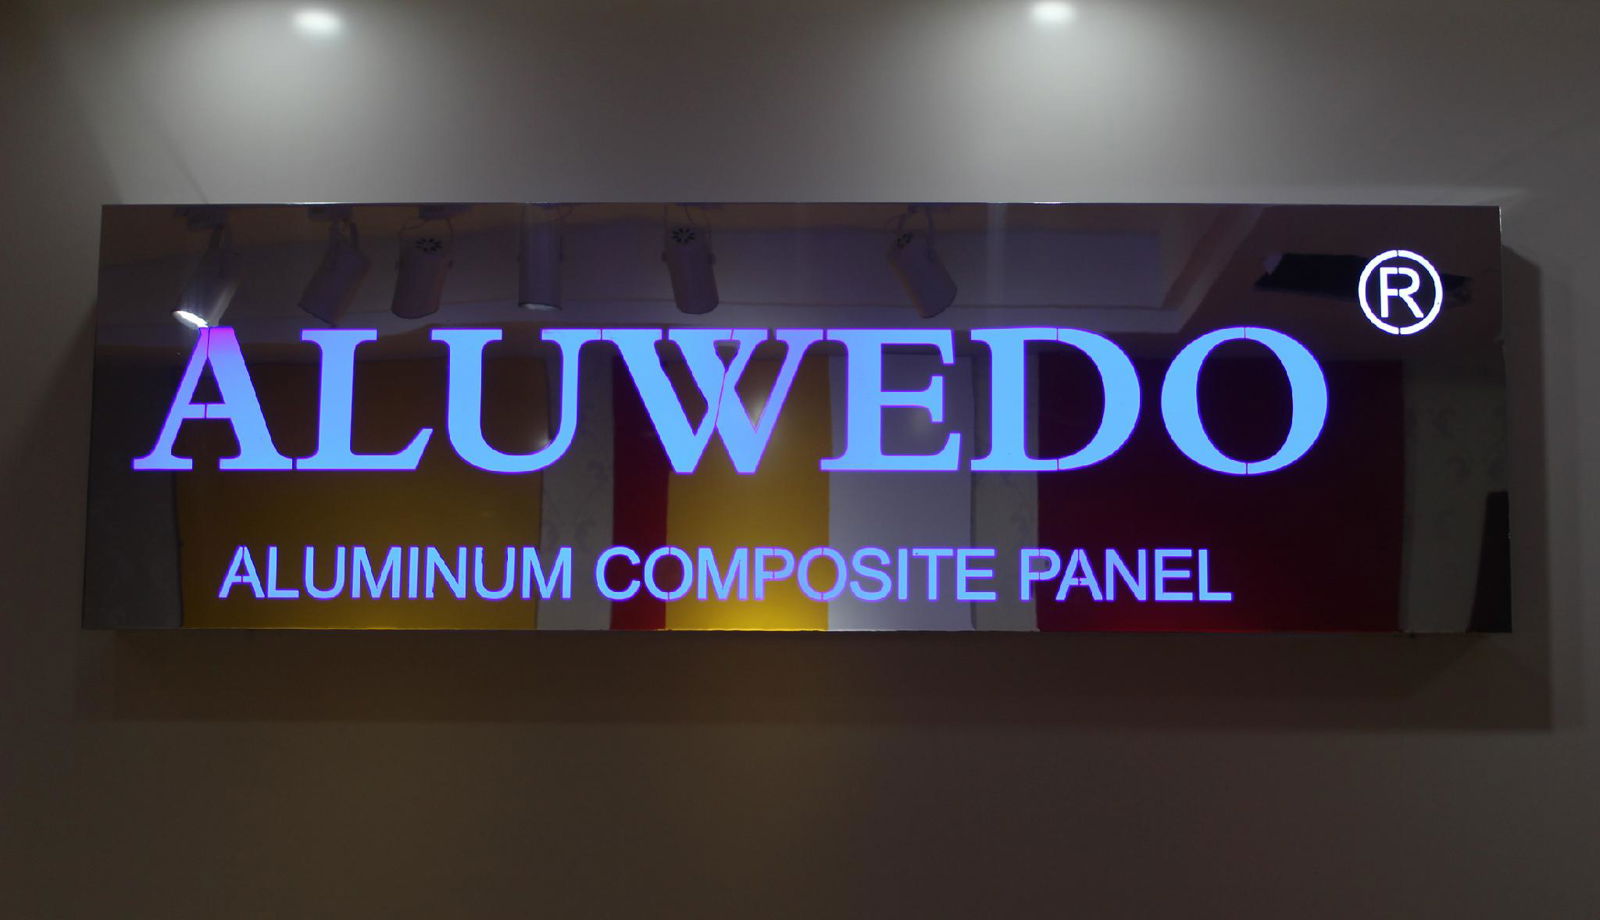 3mm/4mm UV Digital Printing Material Aluminium Composite Panel for Signage  5